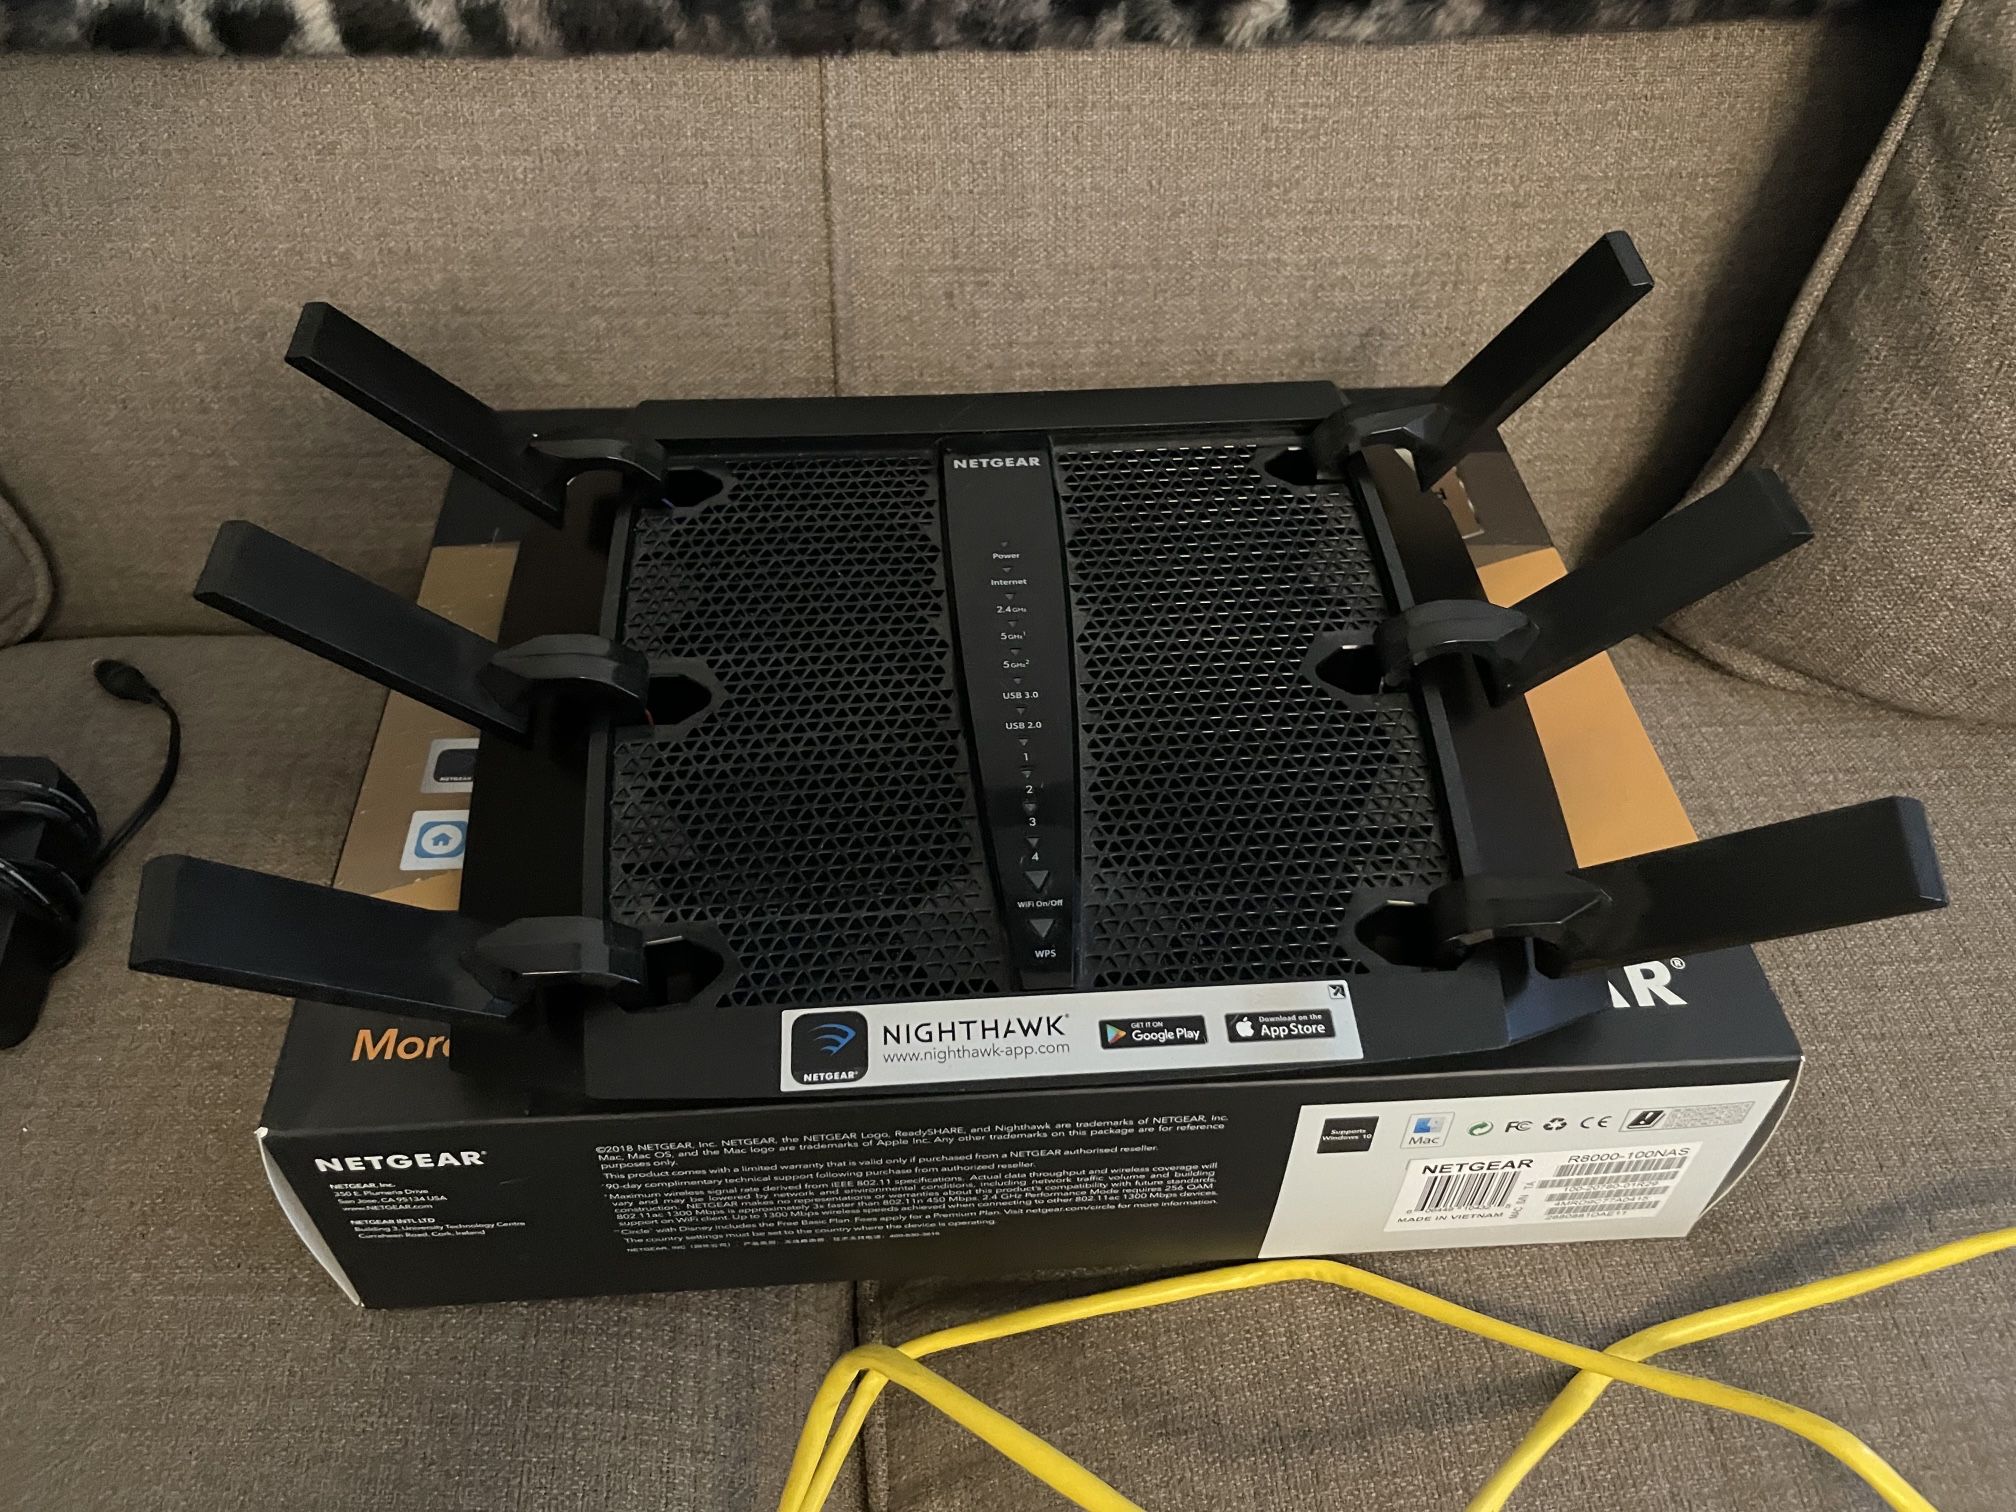 Netgear Nighthawk X6 AC3200 Tri-Band WiFi Router